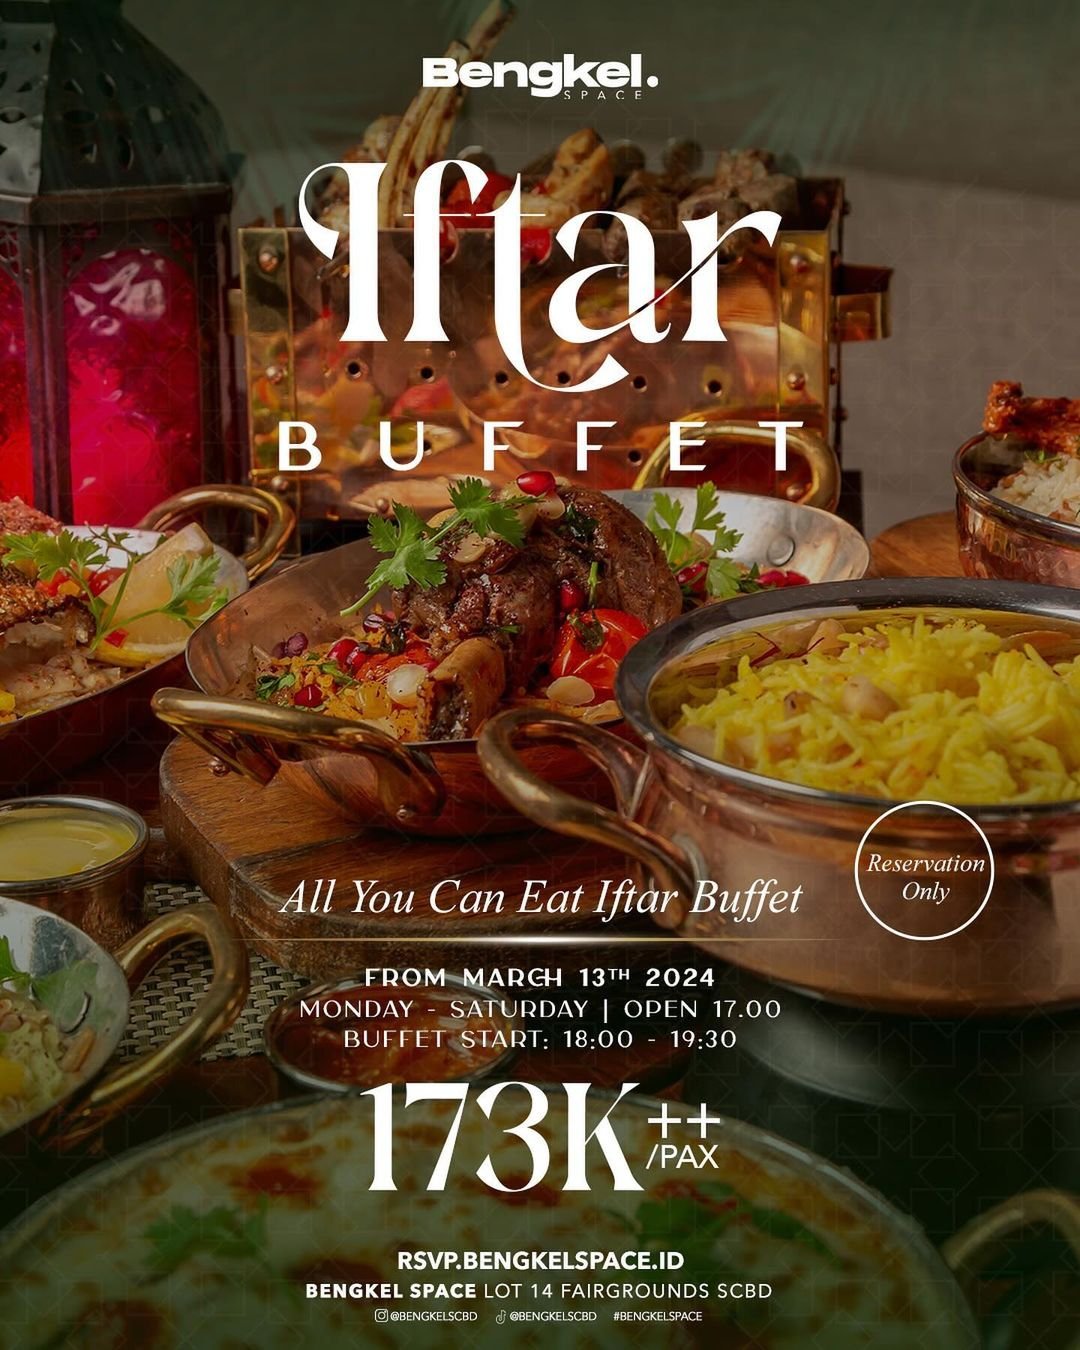 iftar-buffet-jakarta-under-300-ribu-03